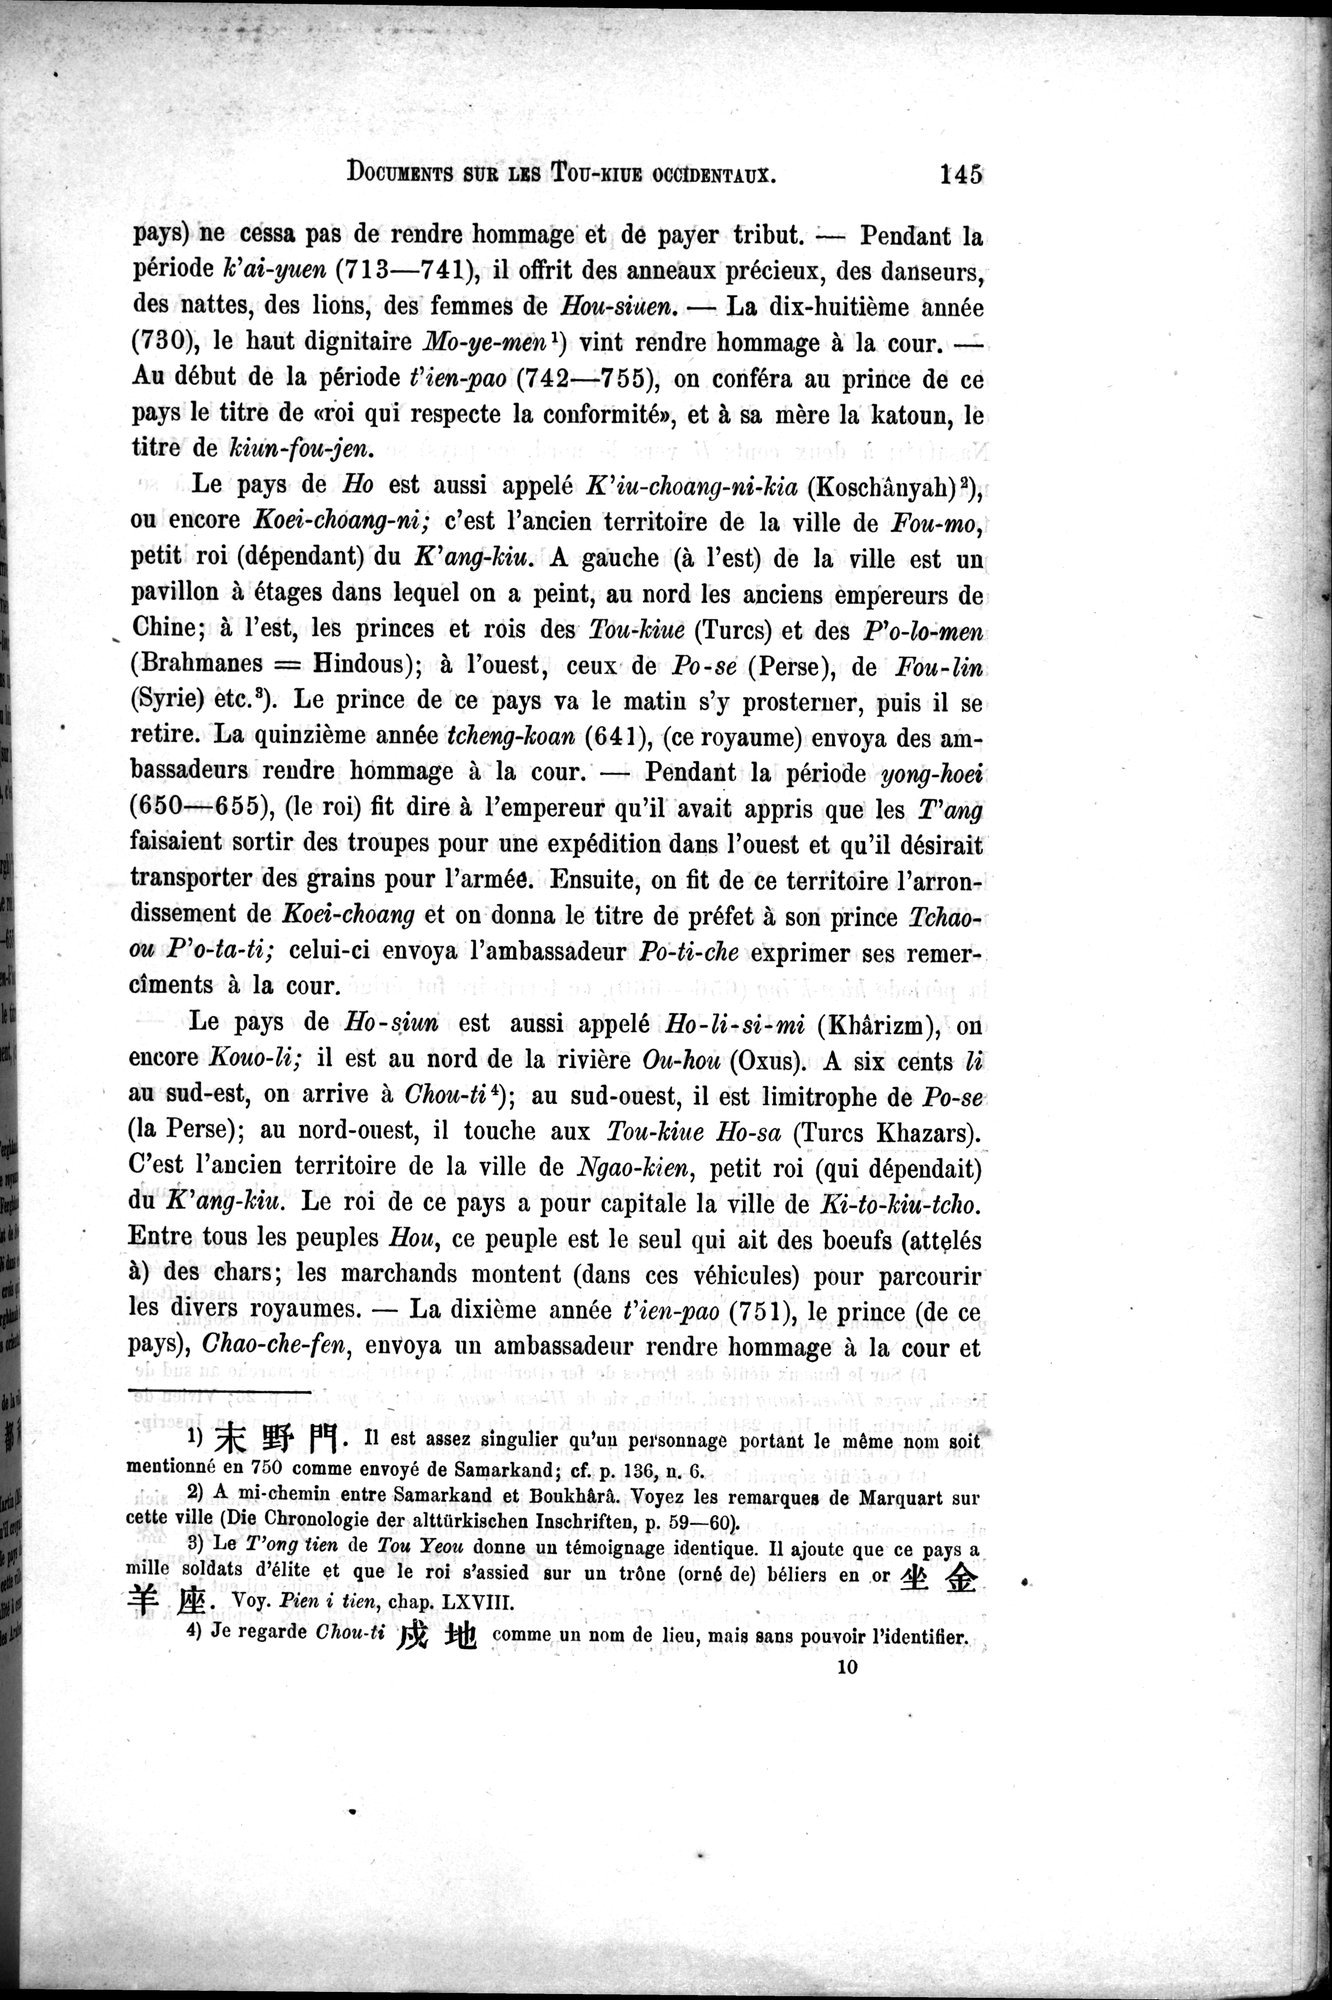 Documents sur les Tou-kiue (Turcs) occidentaux : vol.1 / Page 155 (Grayscale High Resolution Image)